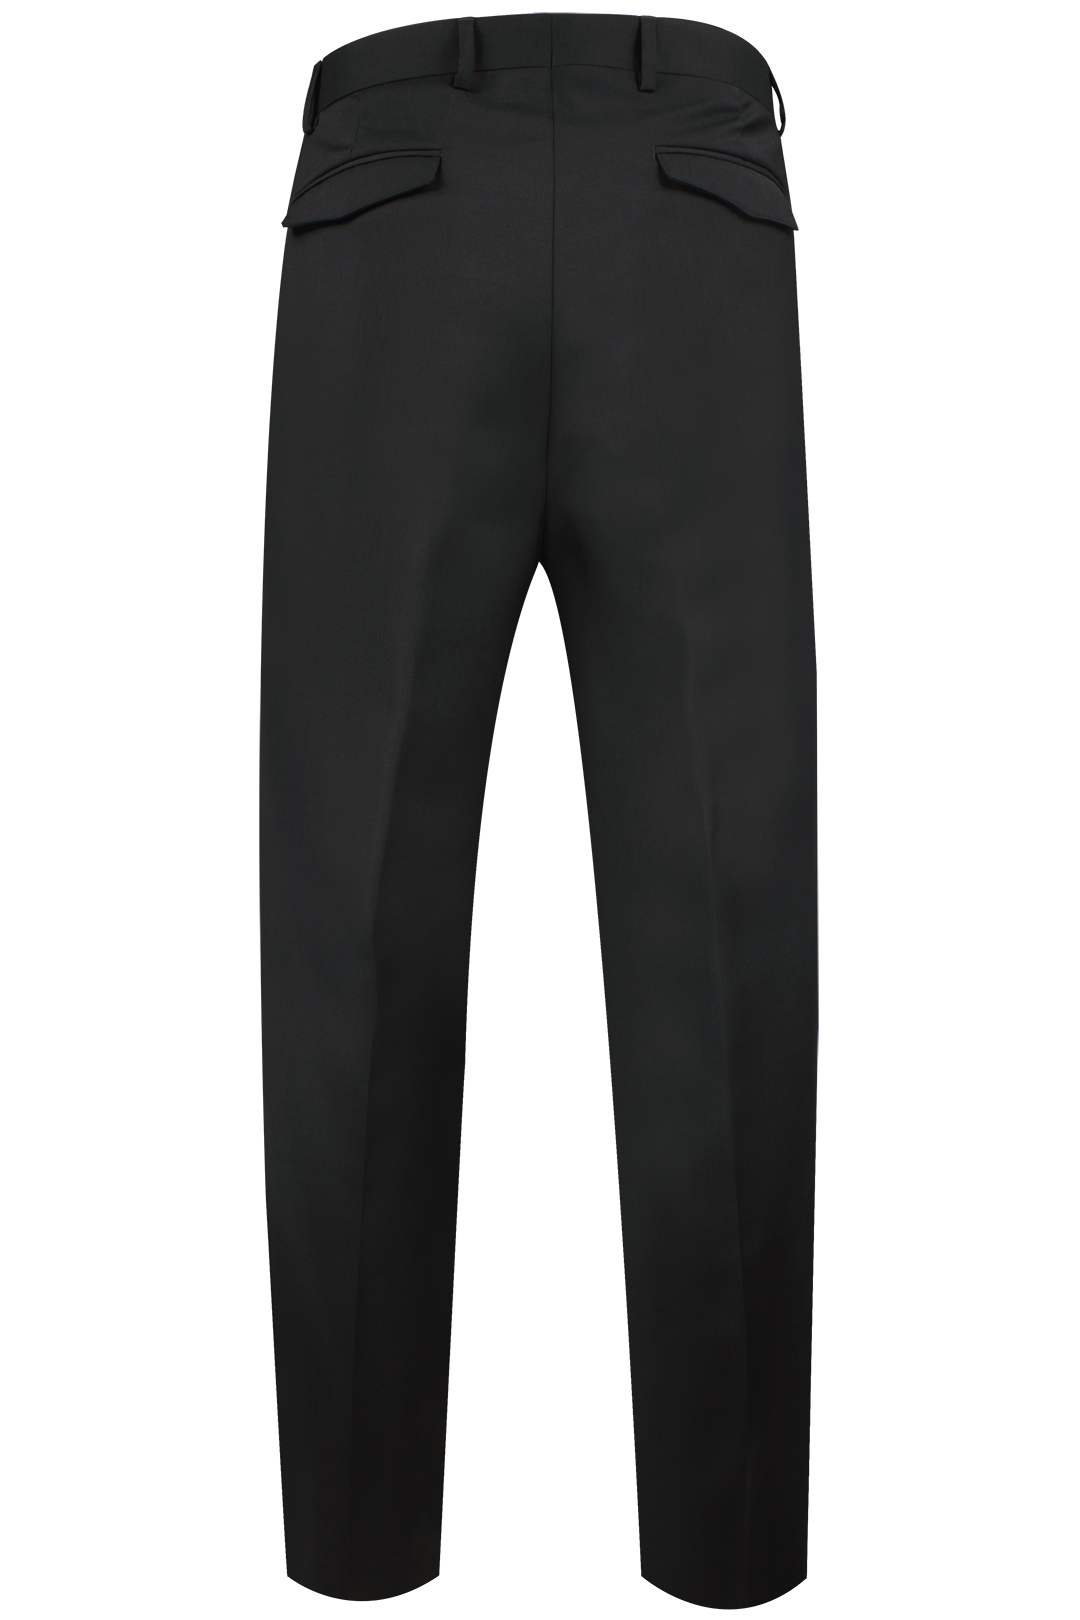 Pantalone in lana nera con banda laterale bianca retro